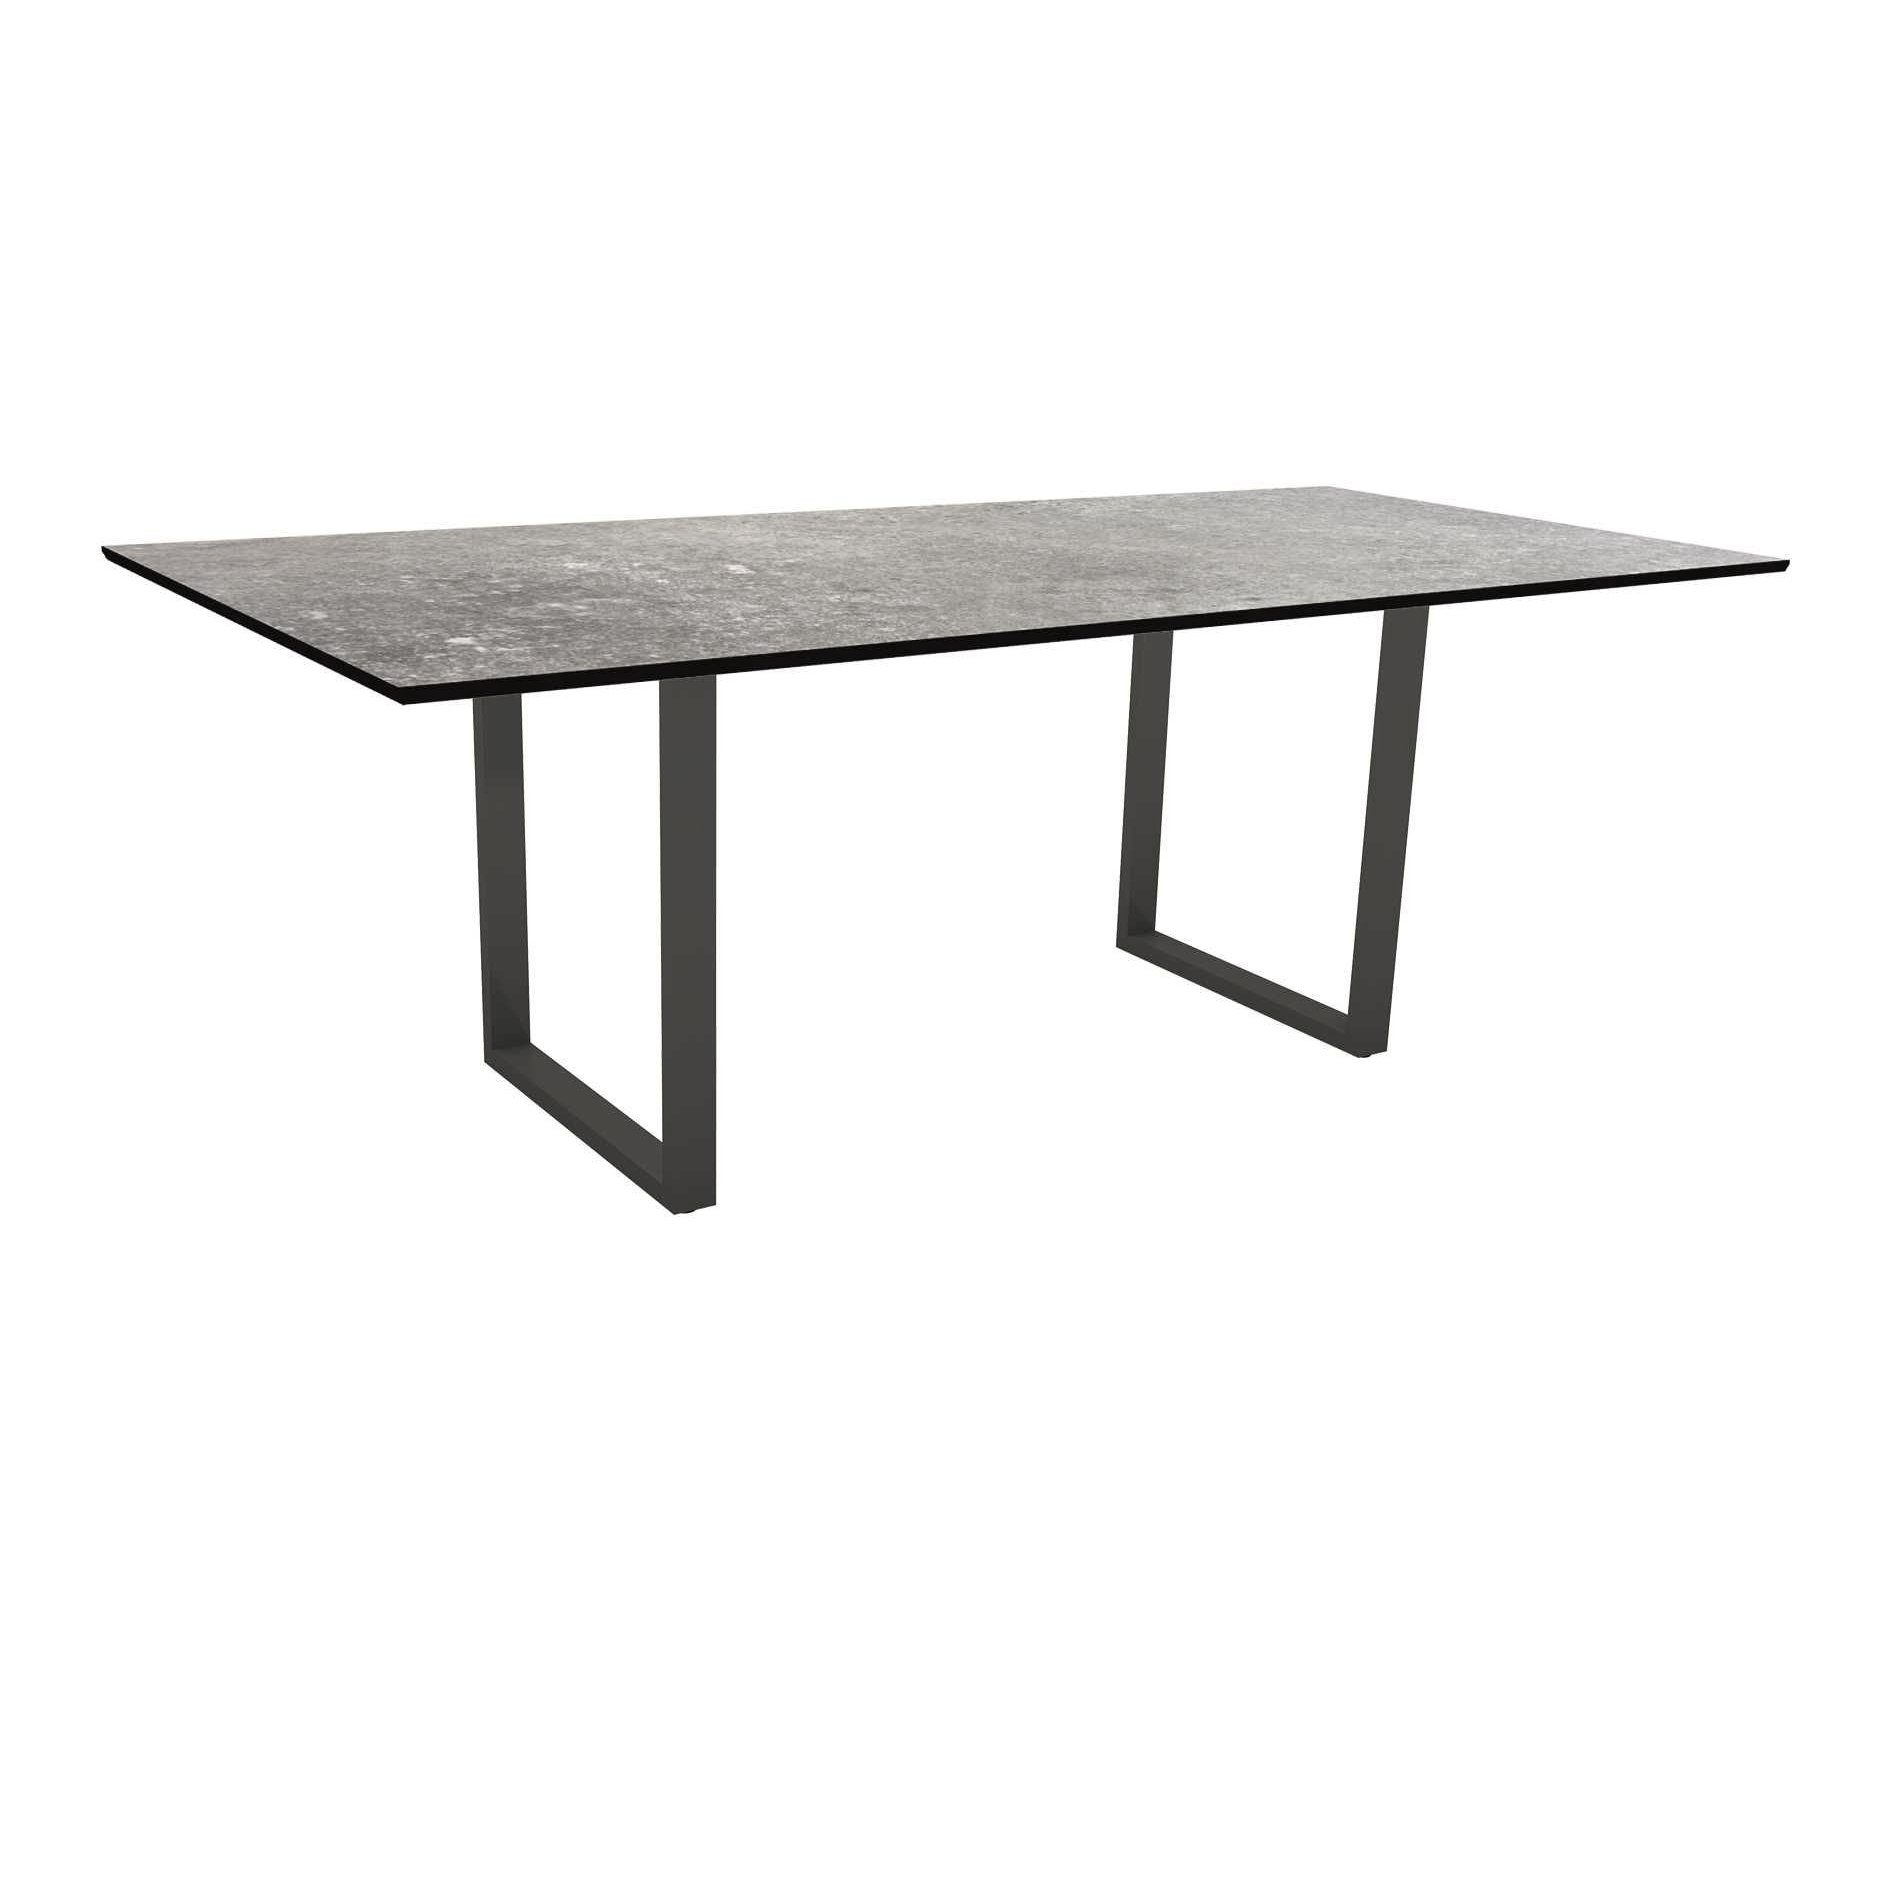 Stern Kufentisch, Maße: 200x100x73 cm, Gestell Aluminium anthrazit, Tischplatte HPL Vintage stone